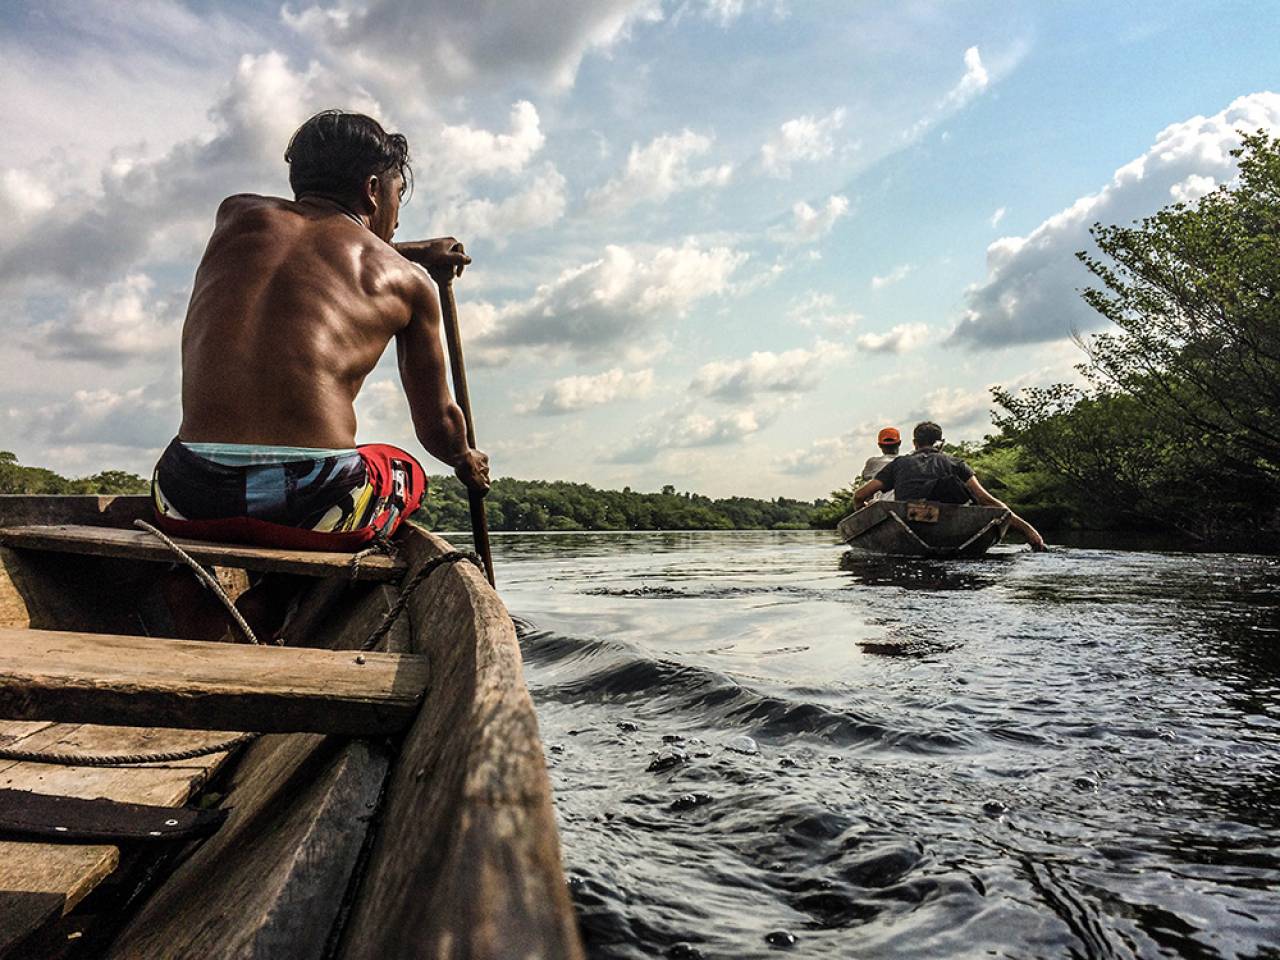 La navigazione sulla rete fluviale amazzonica costituisce il principale mezzo di scambio commerciale. ©Riccardo Sciabetta